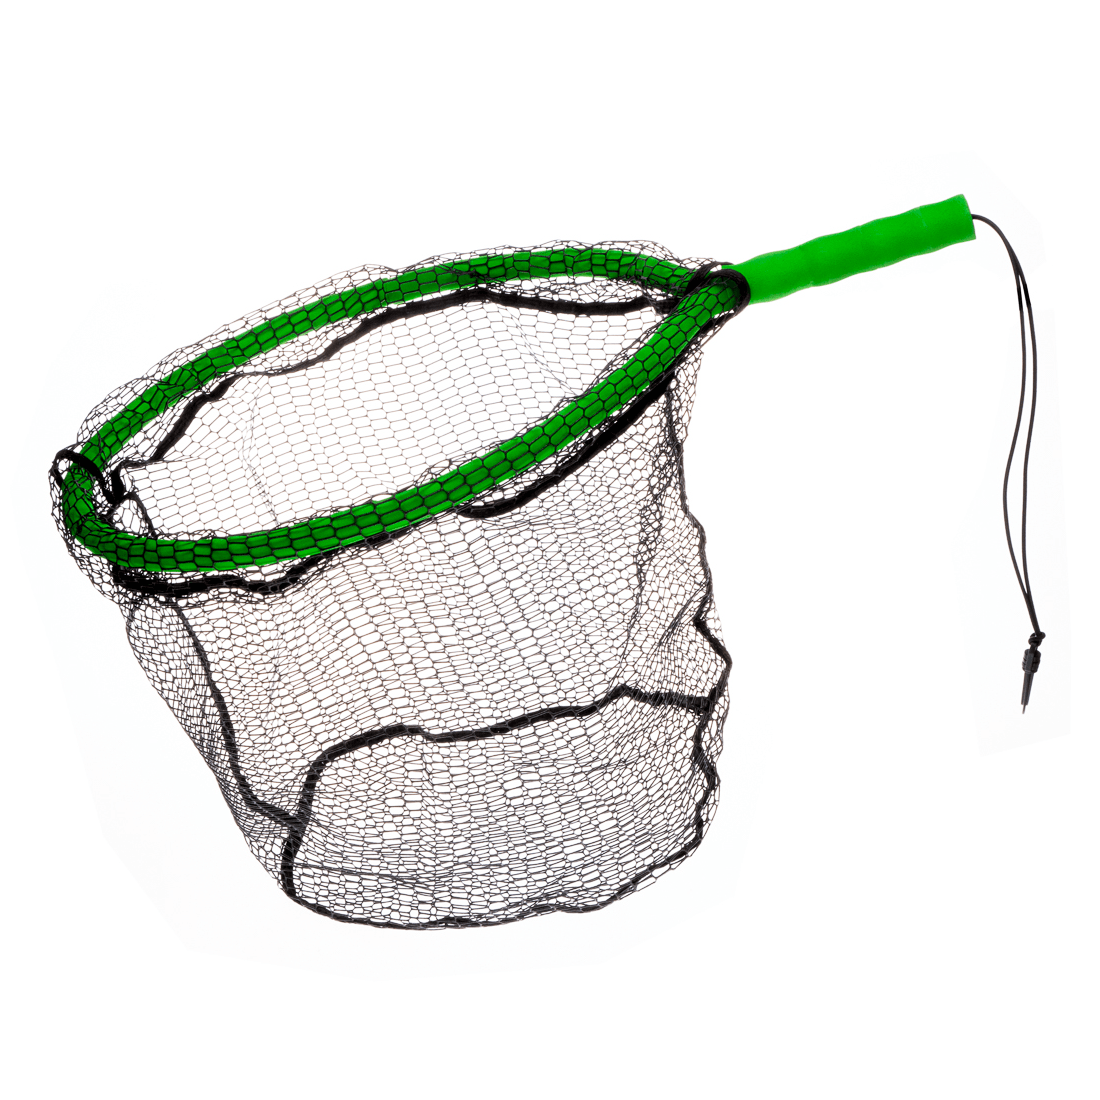 Pro Fish Gear Lunker Snatcher Floating Net